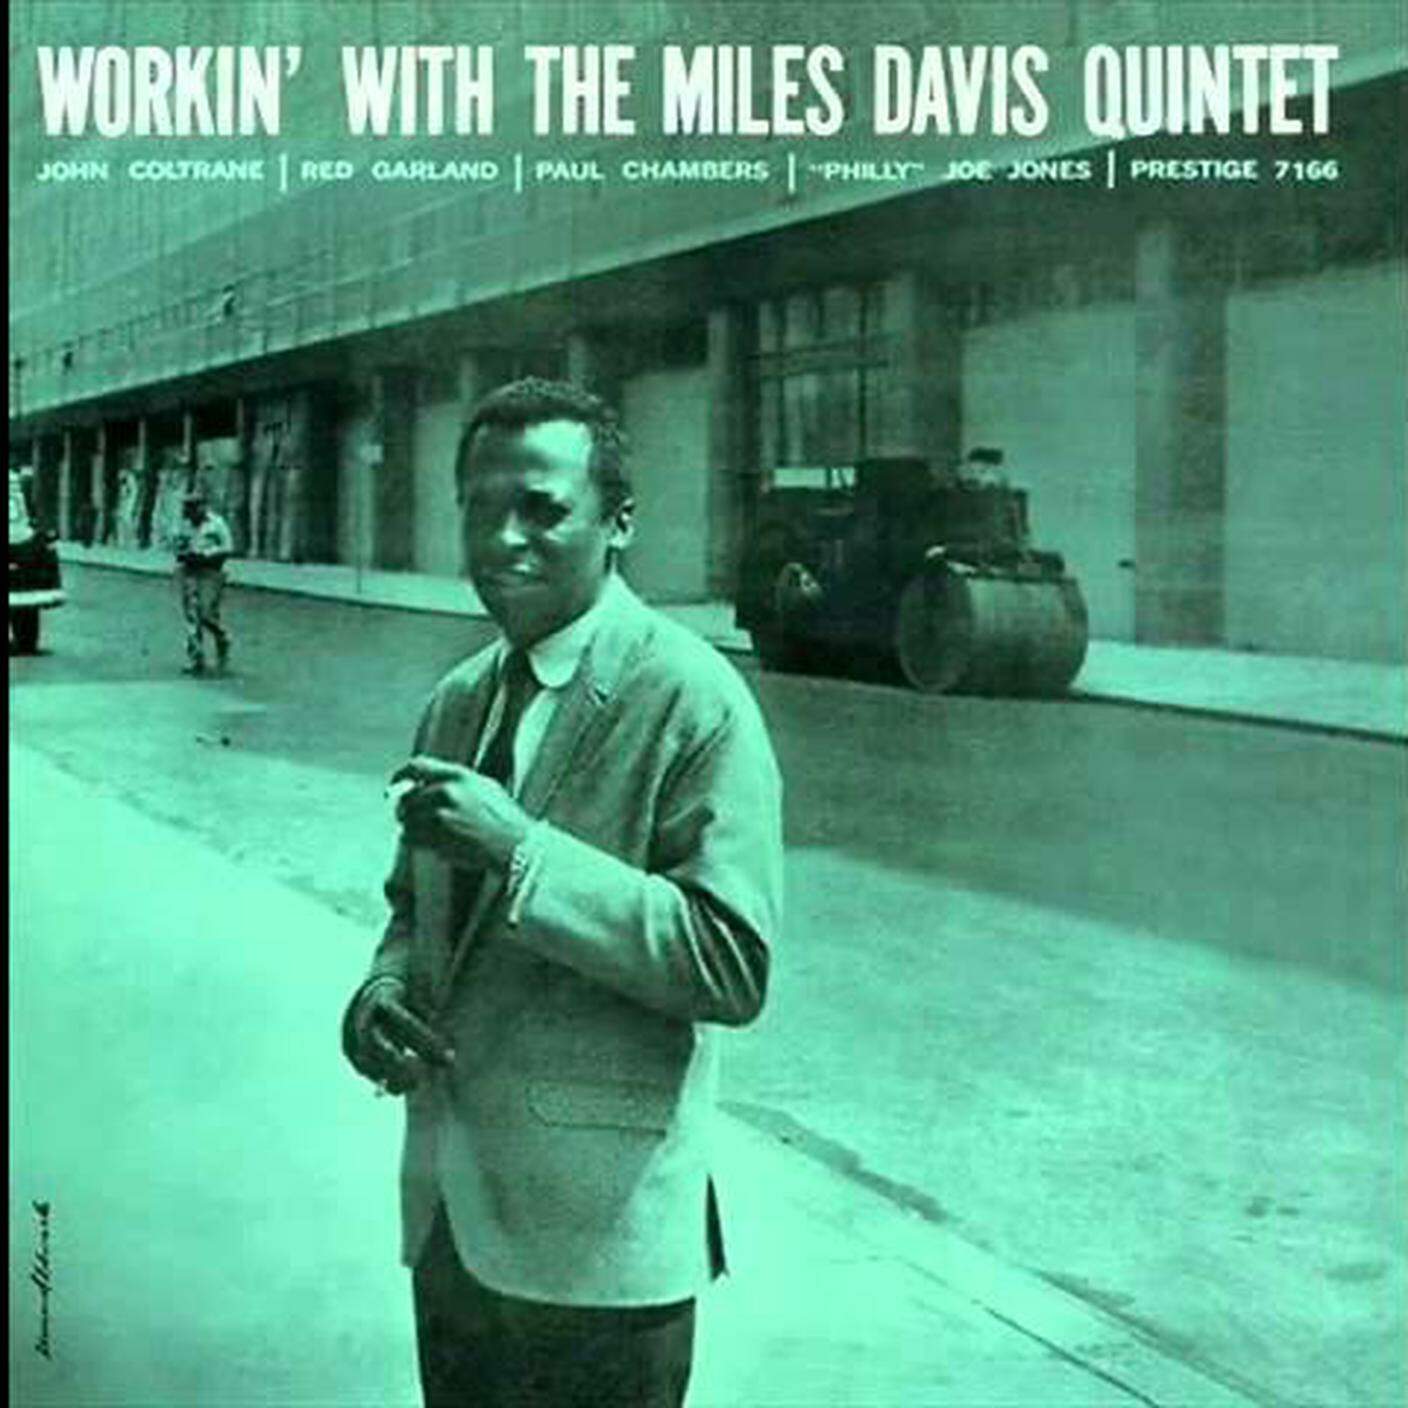 "It never entered my mind" di Miles Davis Quartet, Blue Note (dettaglio di copertina)